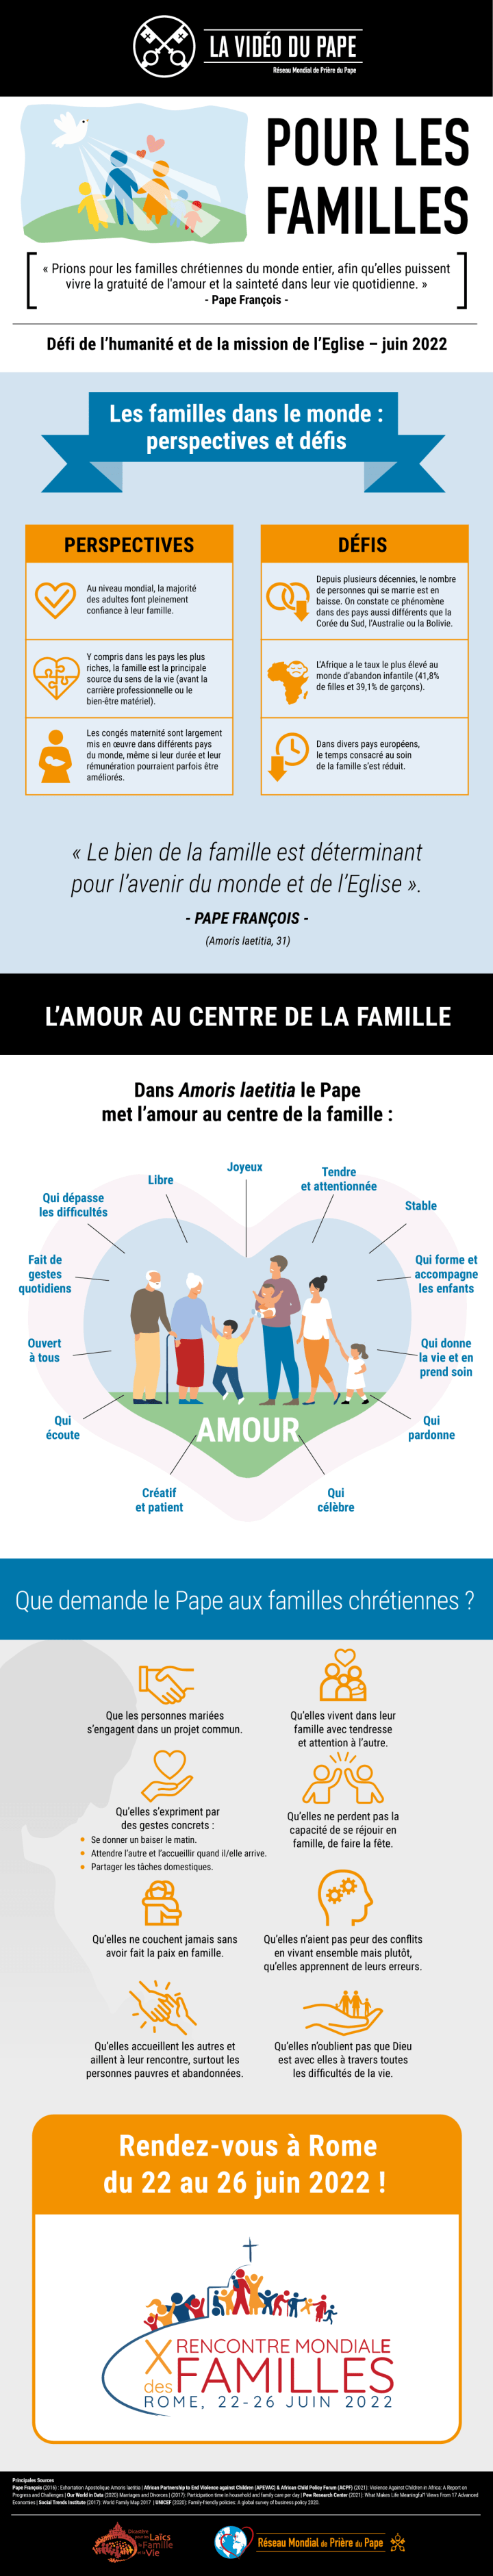 Infographic-TPV-6-2022-FR-Pour-les-familles.png